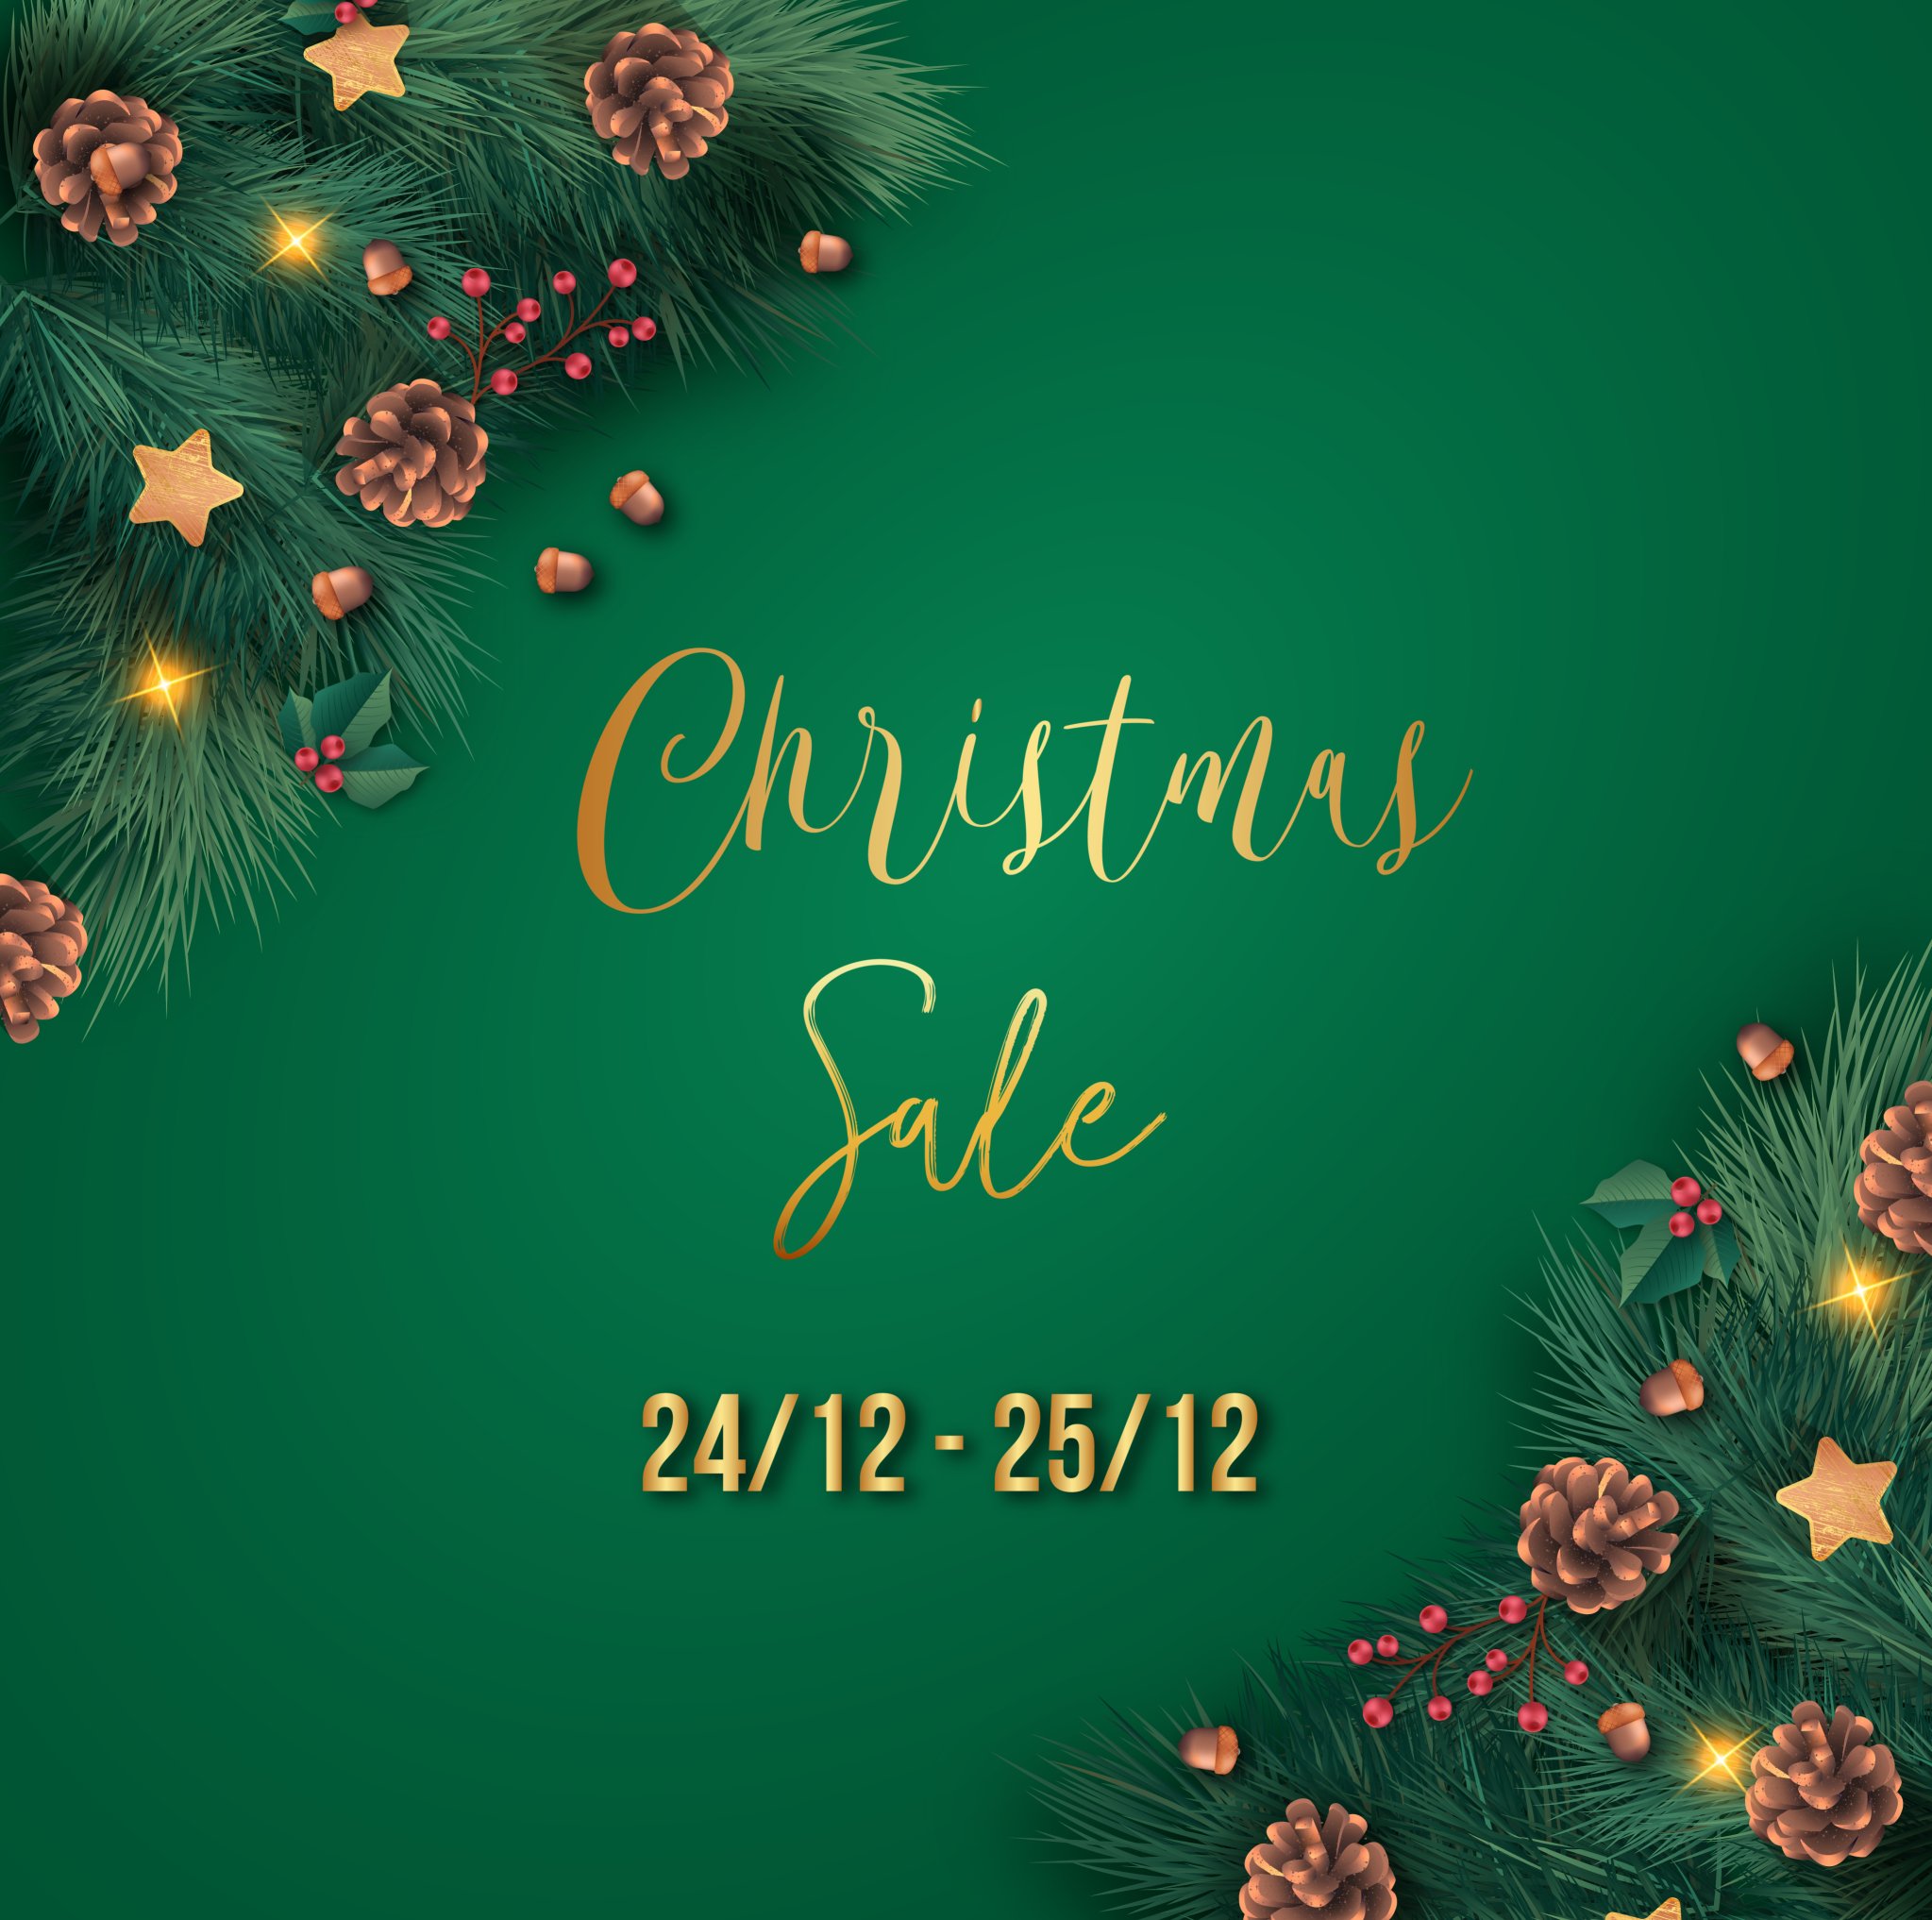 Christmas Sale 2019 - Mừng giáng sinh cùng Rewa